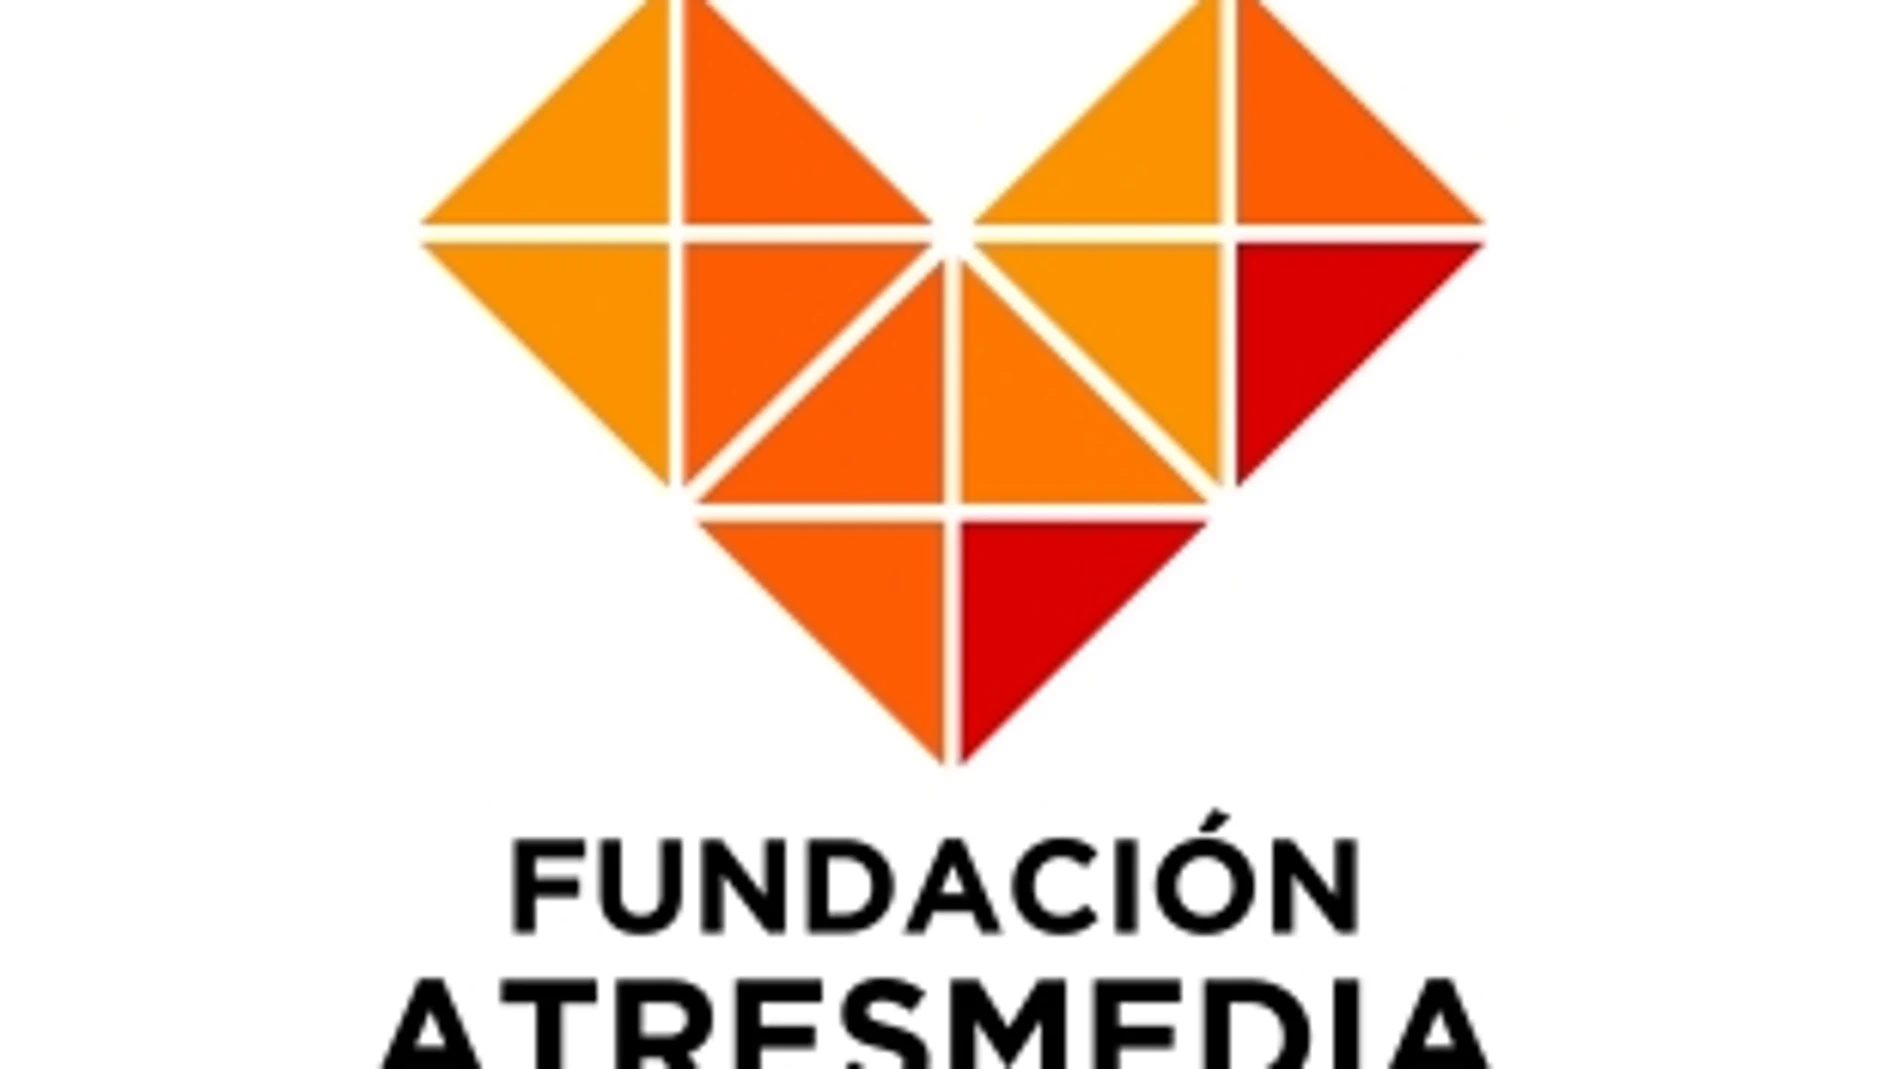 La fundación Atresmedia, líder en transparencia